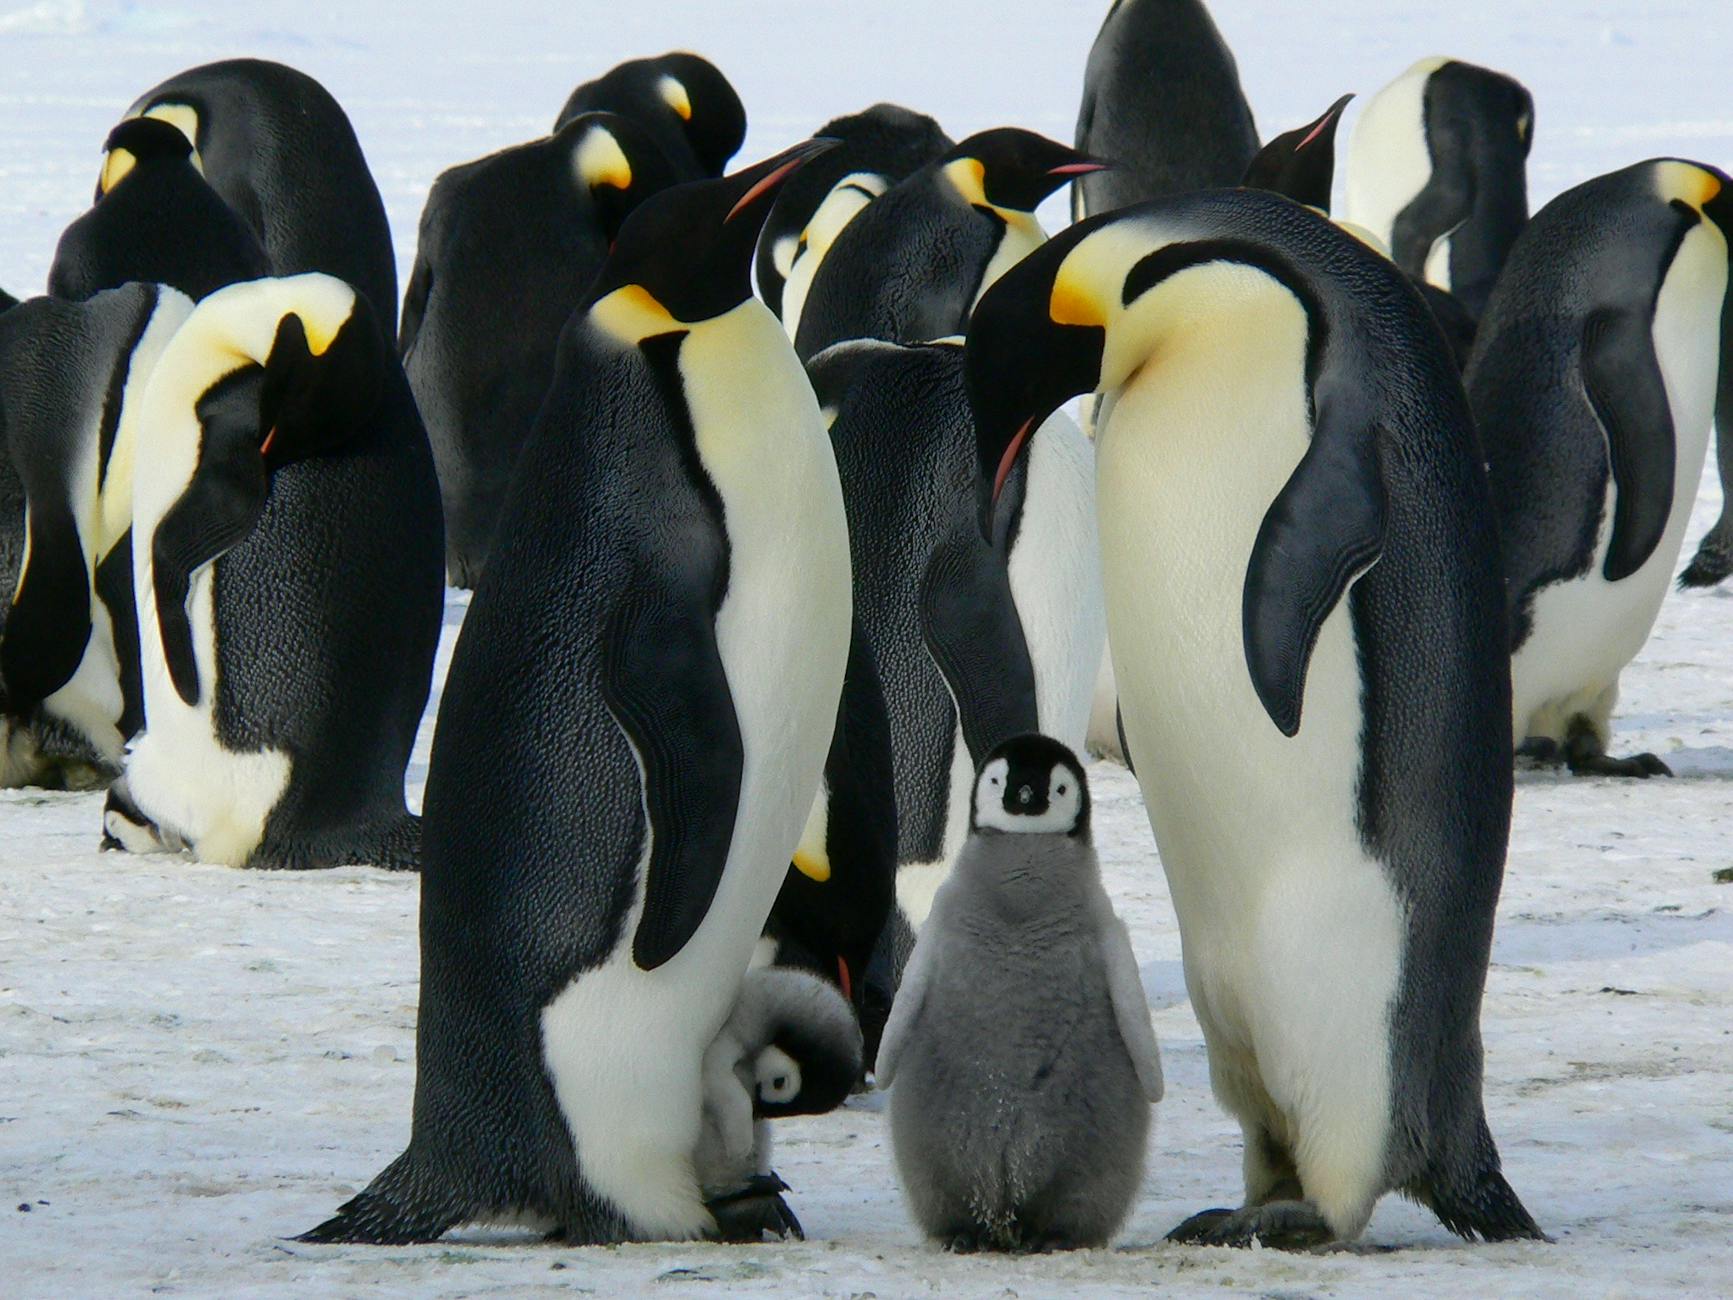 Meet the Emperor Penguin